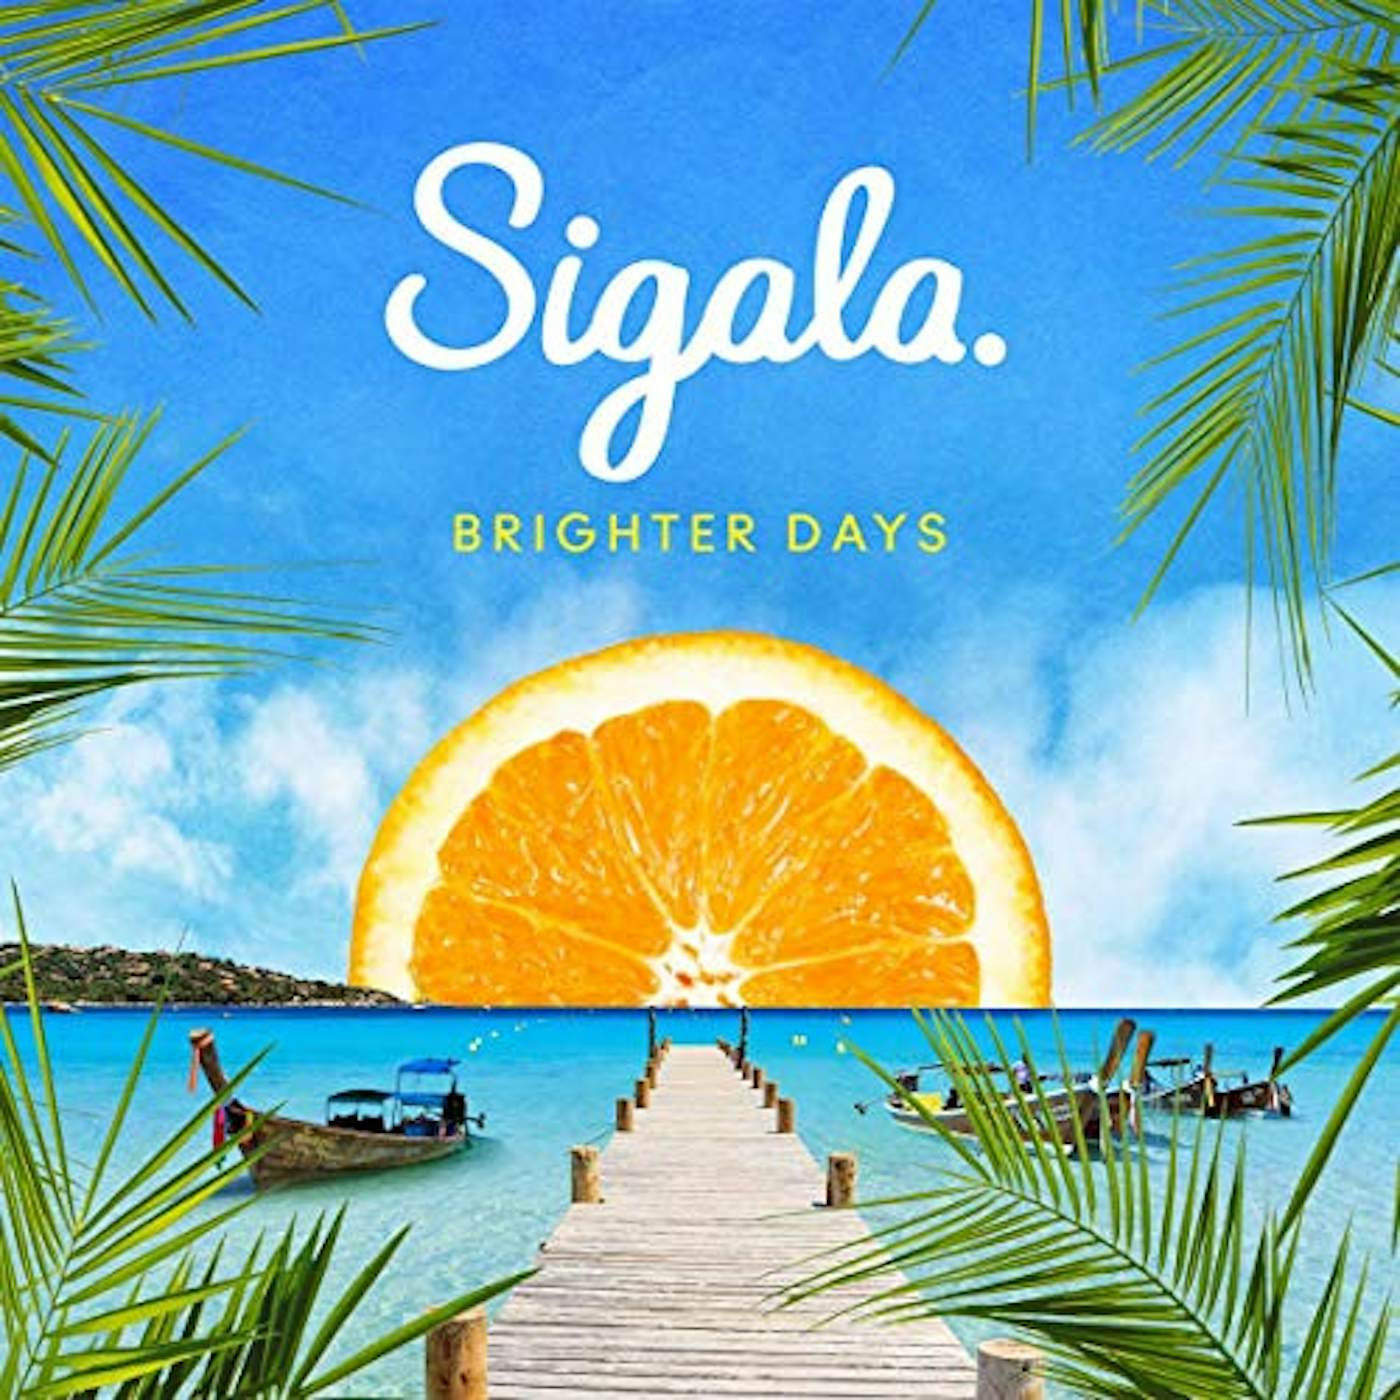 Sigala Brighter Days Vinyl Record